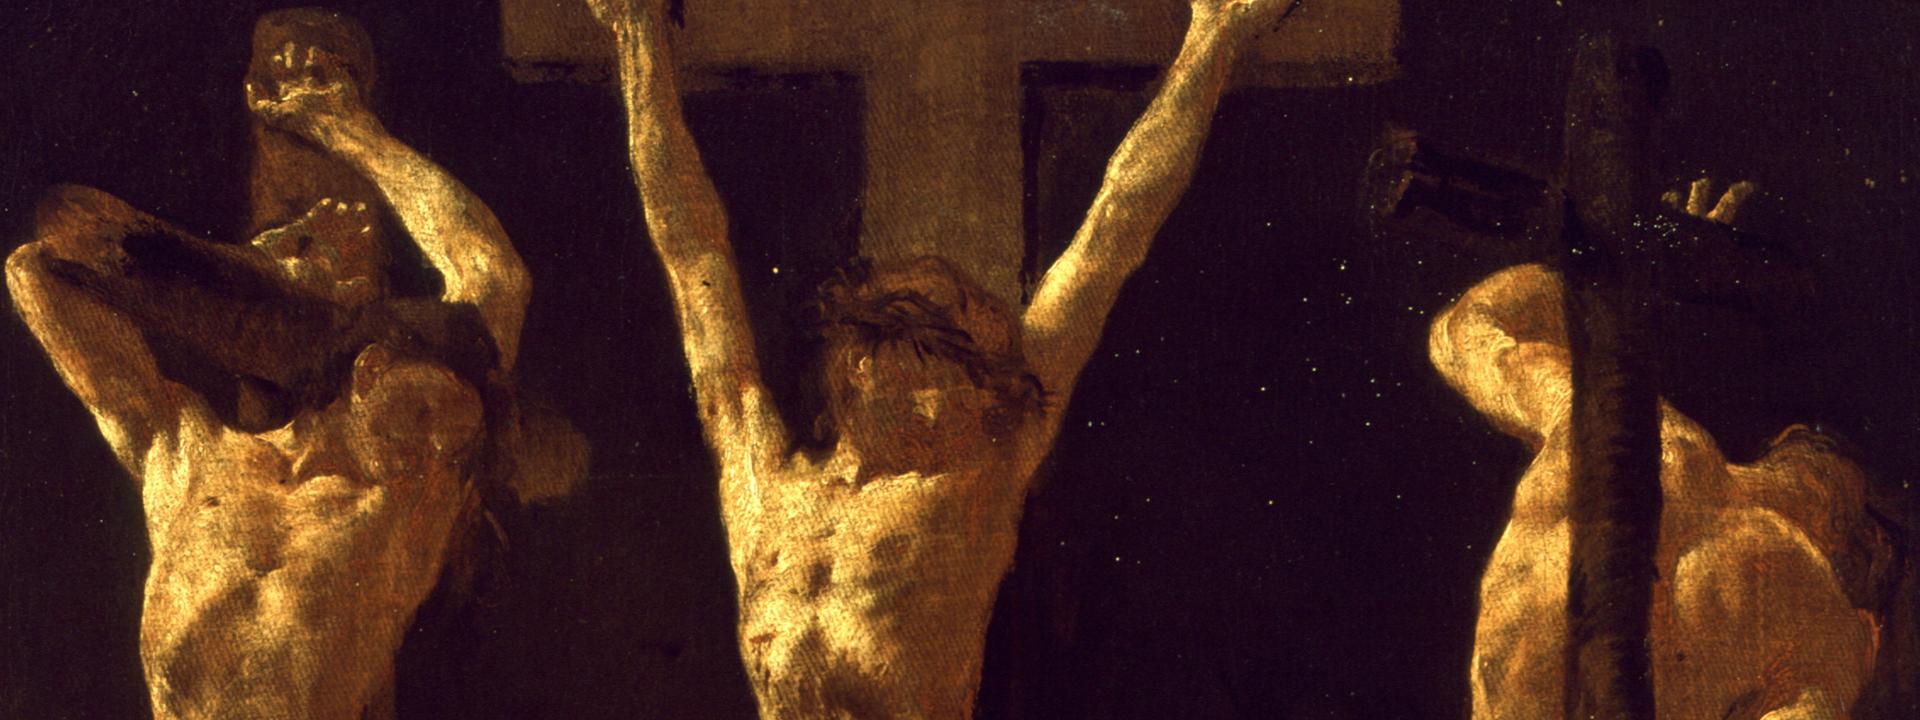 Piazzetta, Cristo crocifisso tra due ladroni (719)